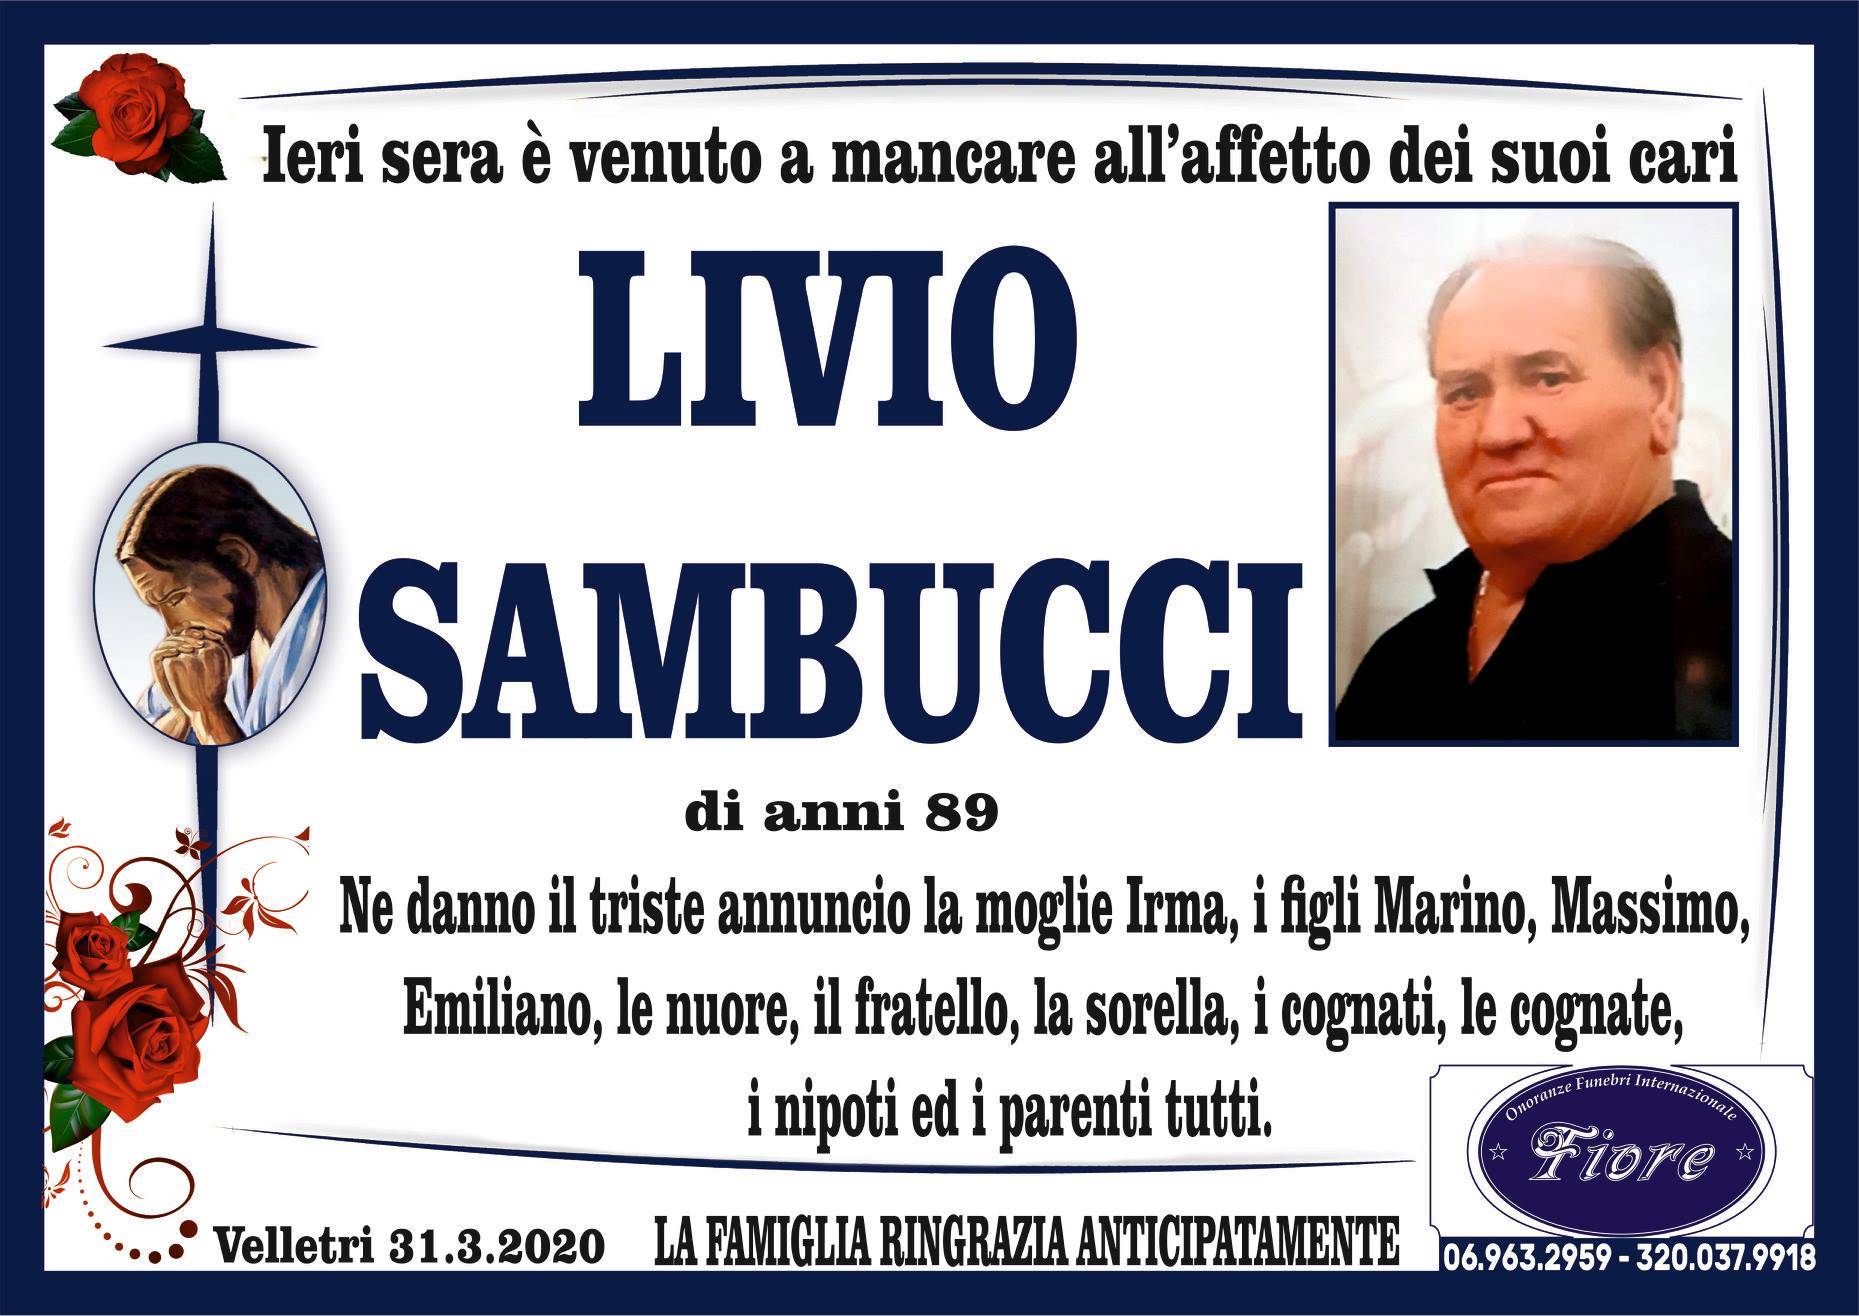 Livio Sambucci